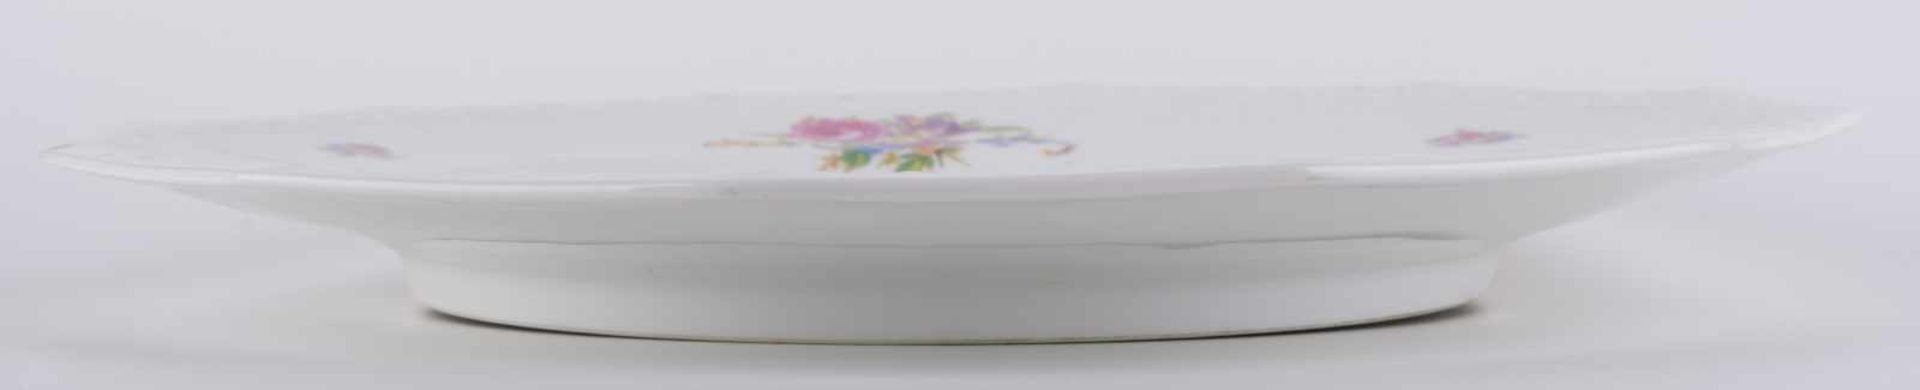 Kuchenplatte Rosenthal Maria / Cake plate verziert mit Blumendekor, umlaufend floraler - Bild 5 aus 8